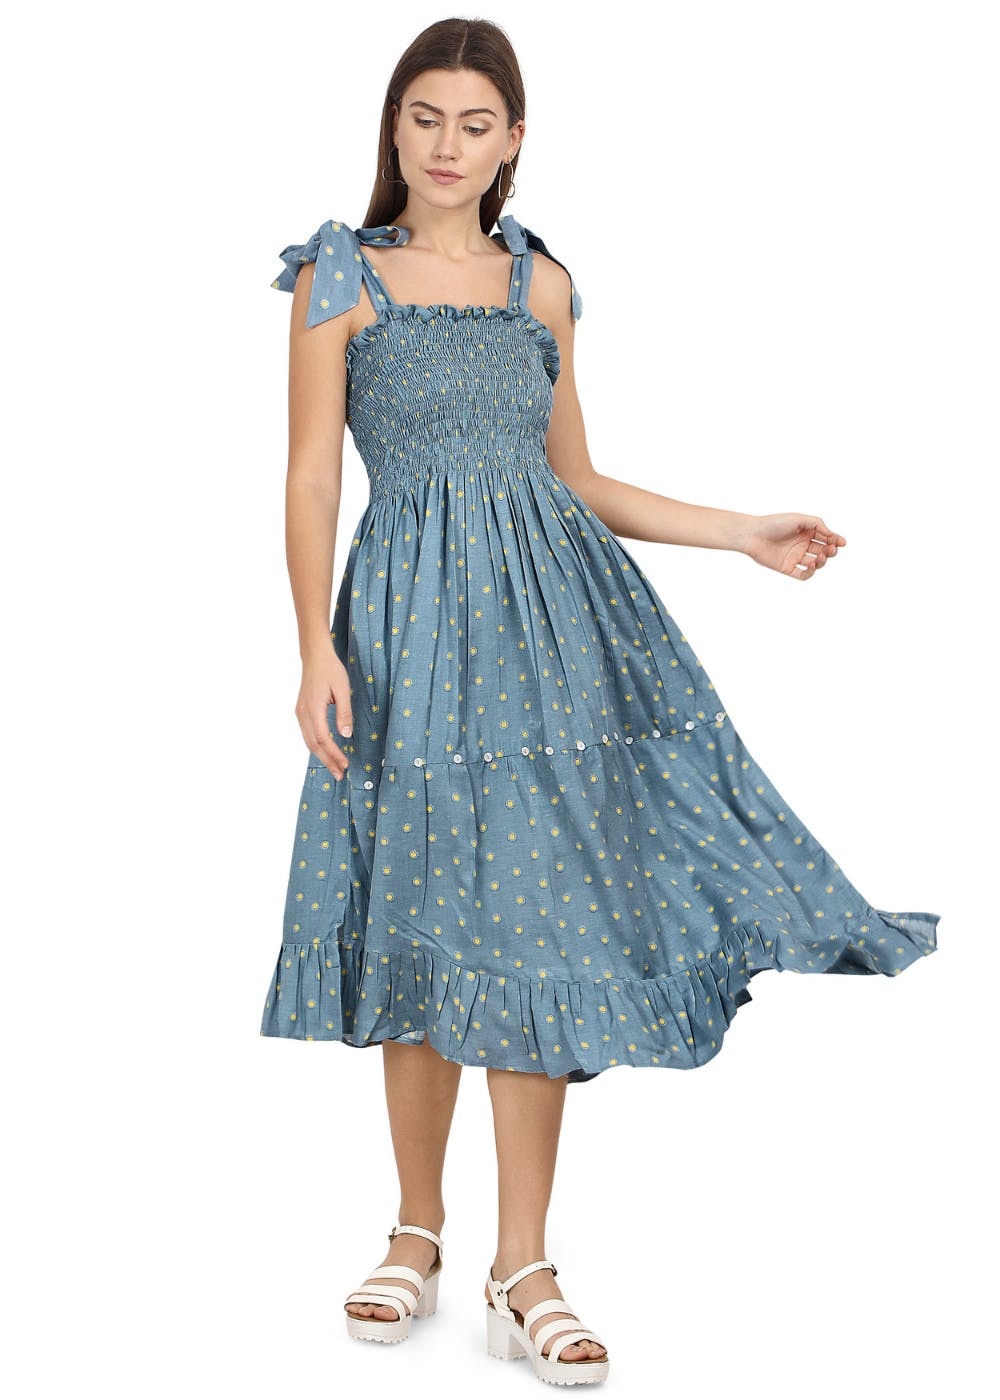 Shoulder Tie Detail Polka Dots Printed Blue Summer Dress